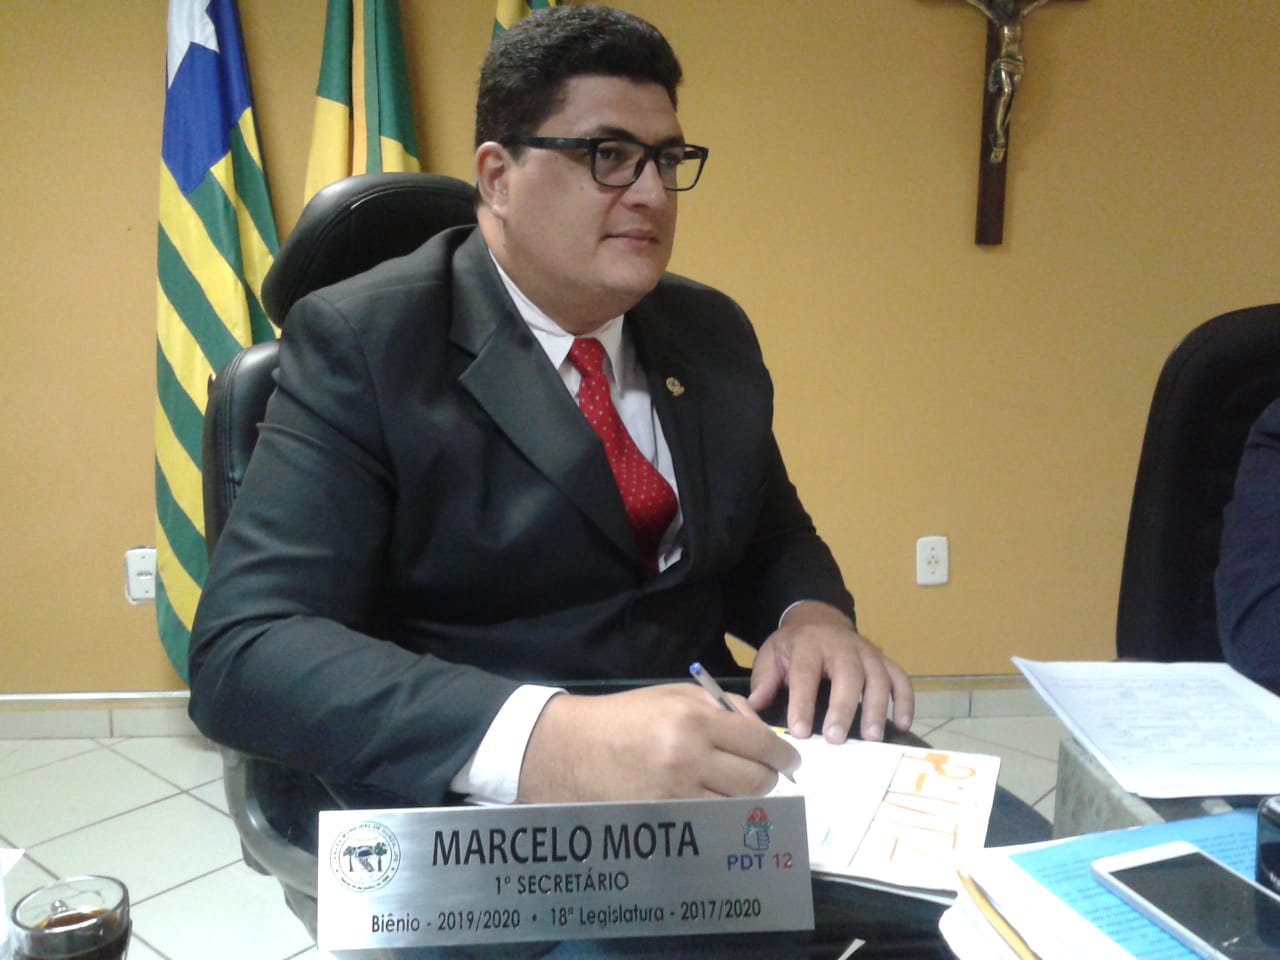 Vereador Marcelo Mota (PDT) Afirma que o lixo nos Bairros não foi coletado porque o fornecimento do combustível foi cortado 